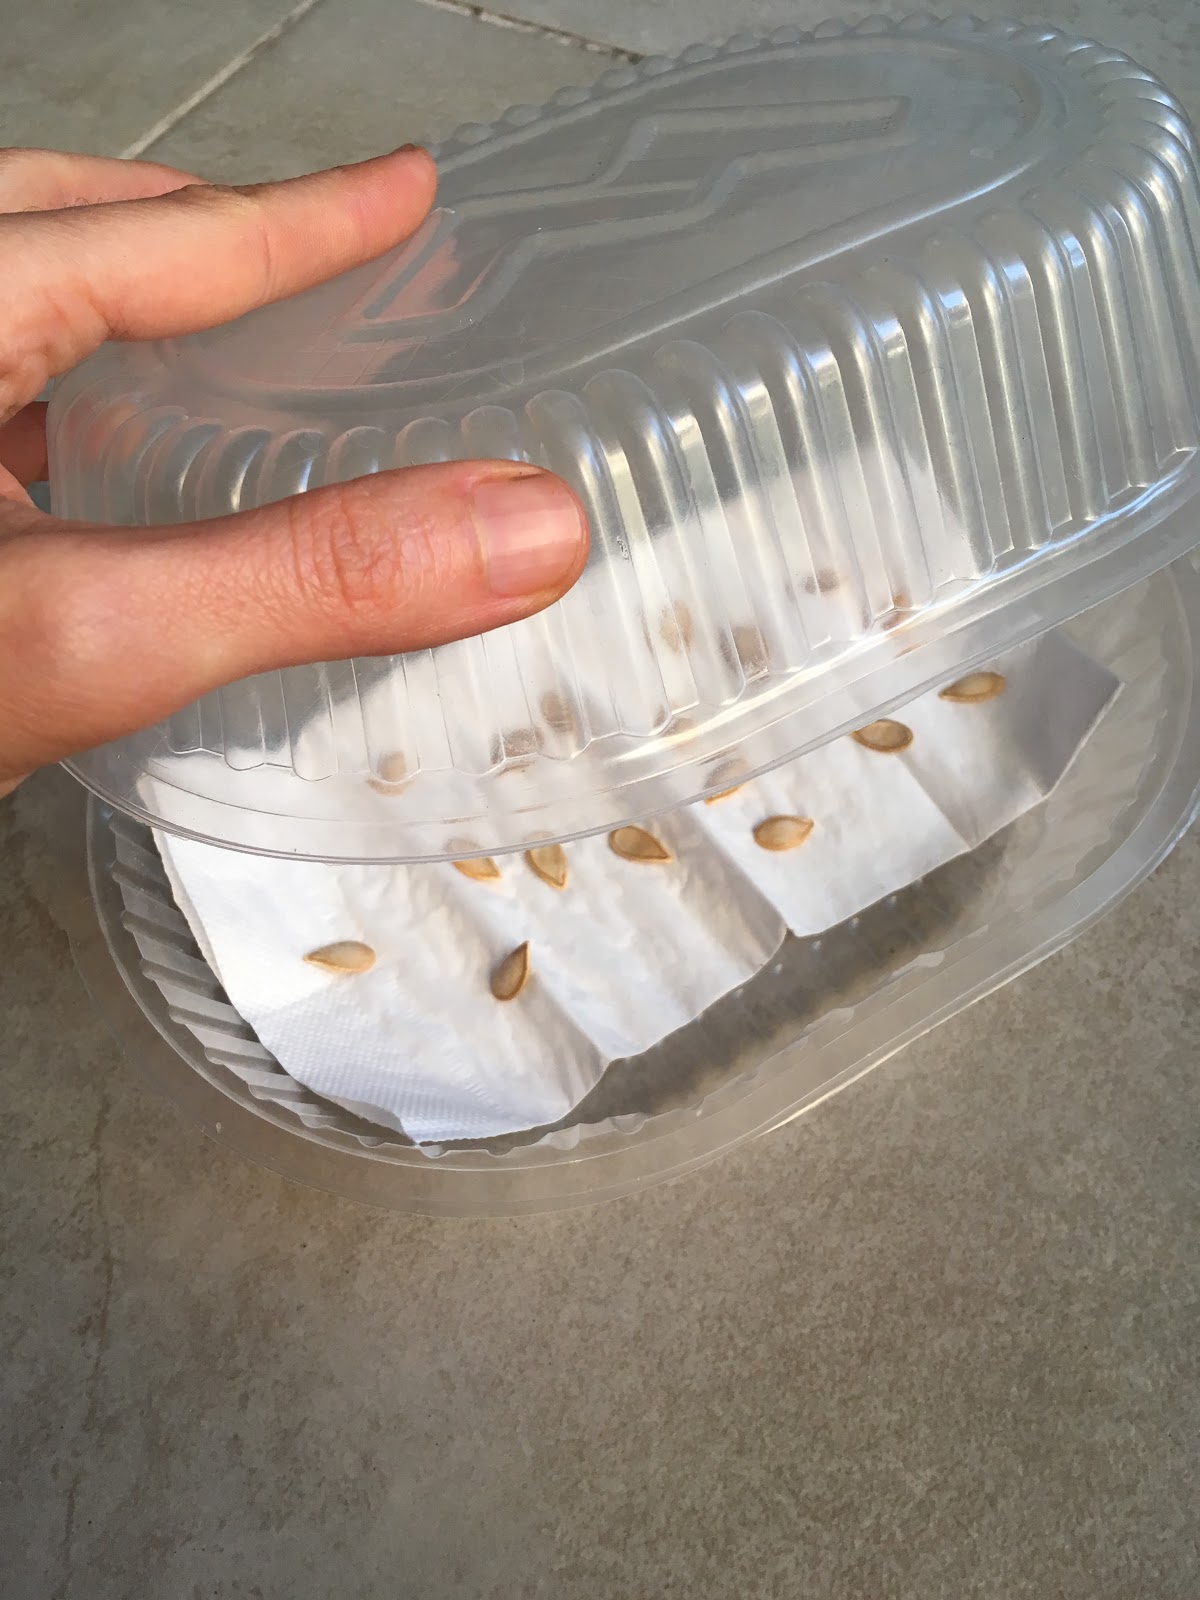 una bandeja de plástico con semillas apoyadas sobre una servilleta dentro de la bandeja.